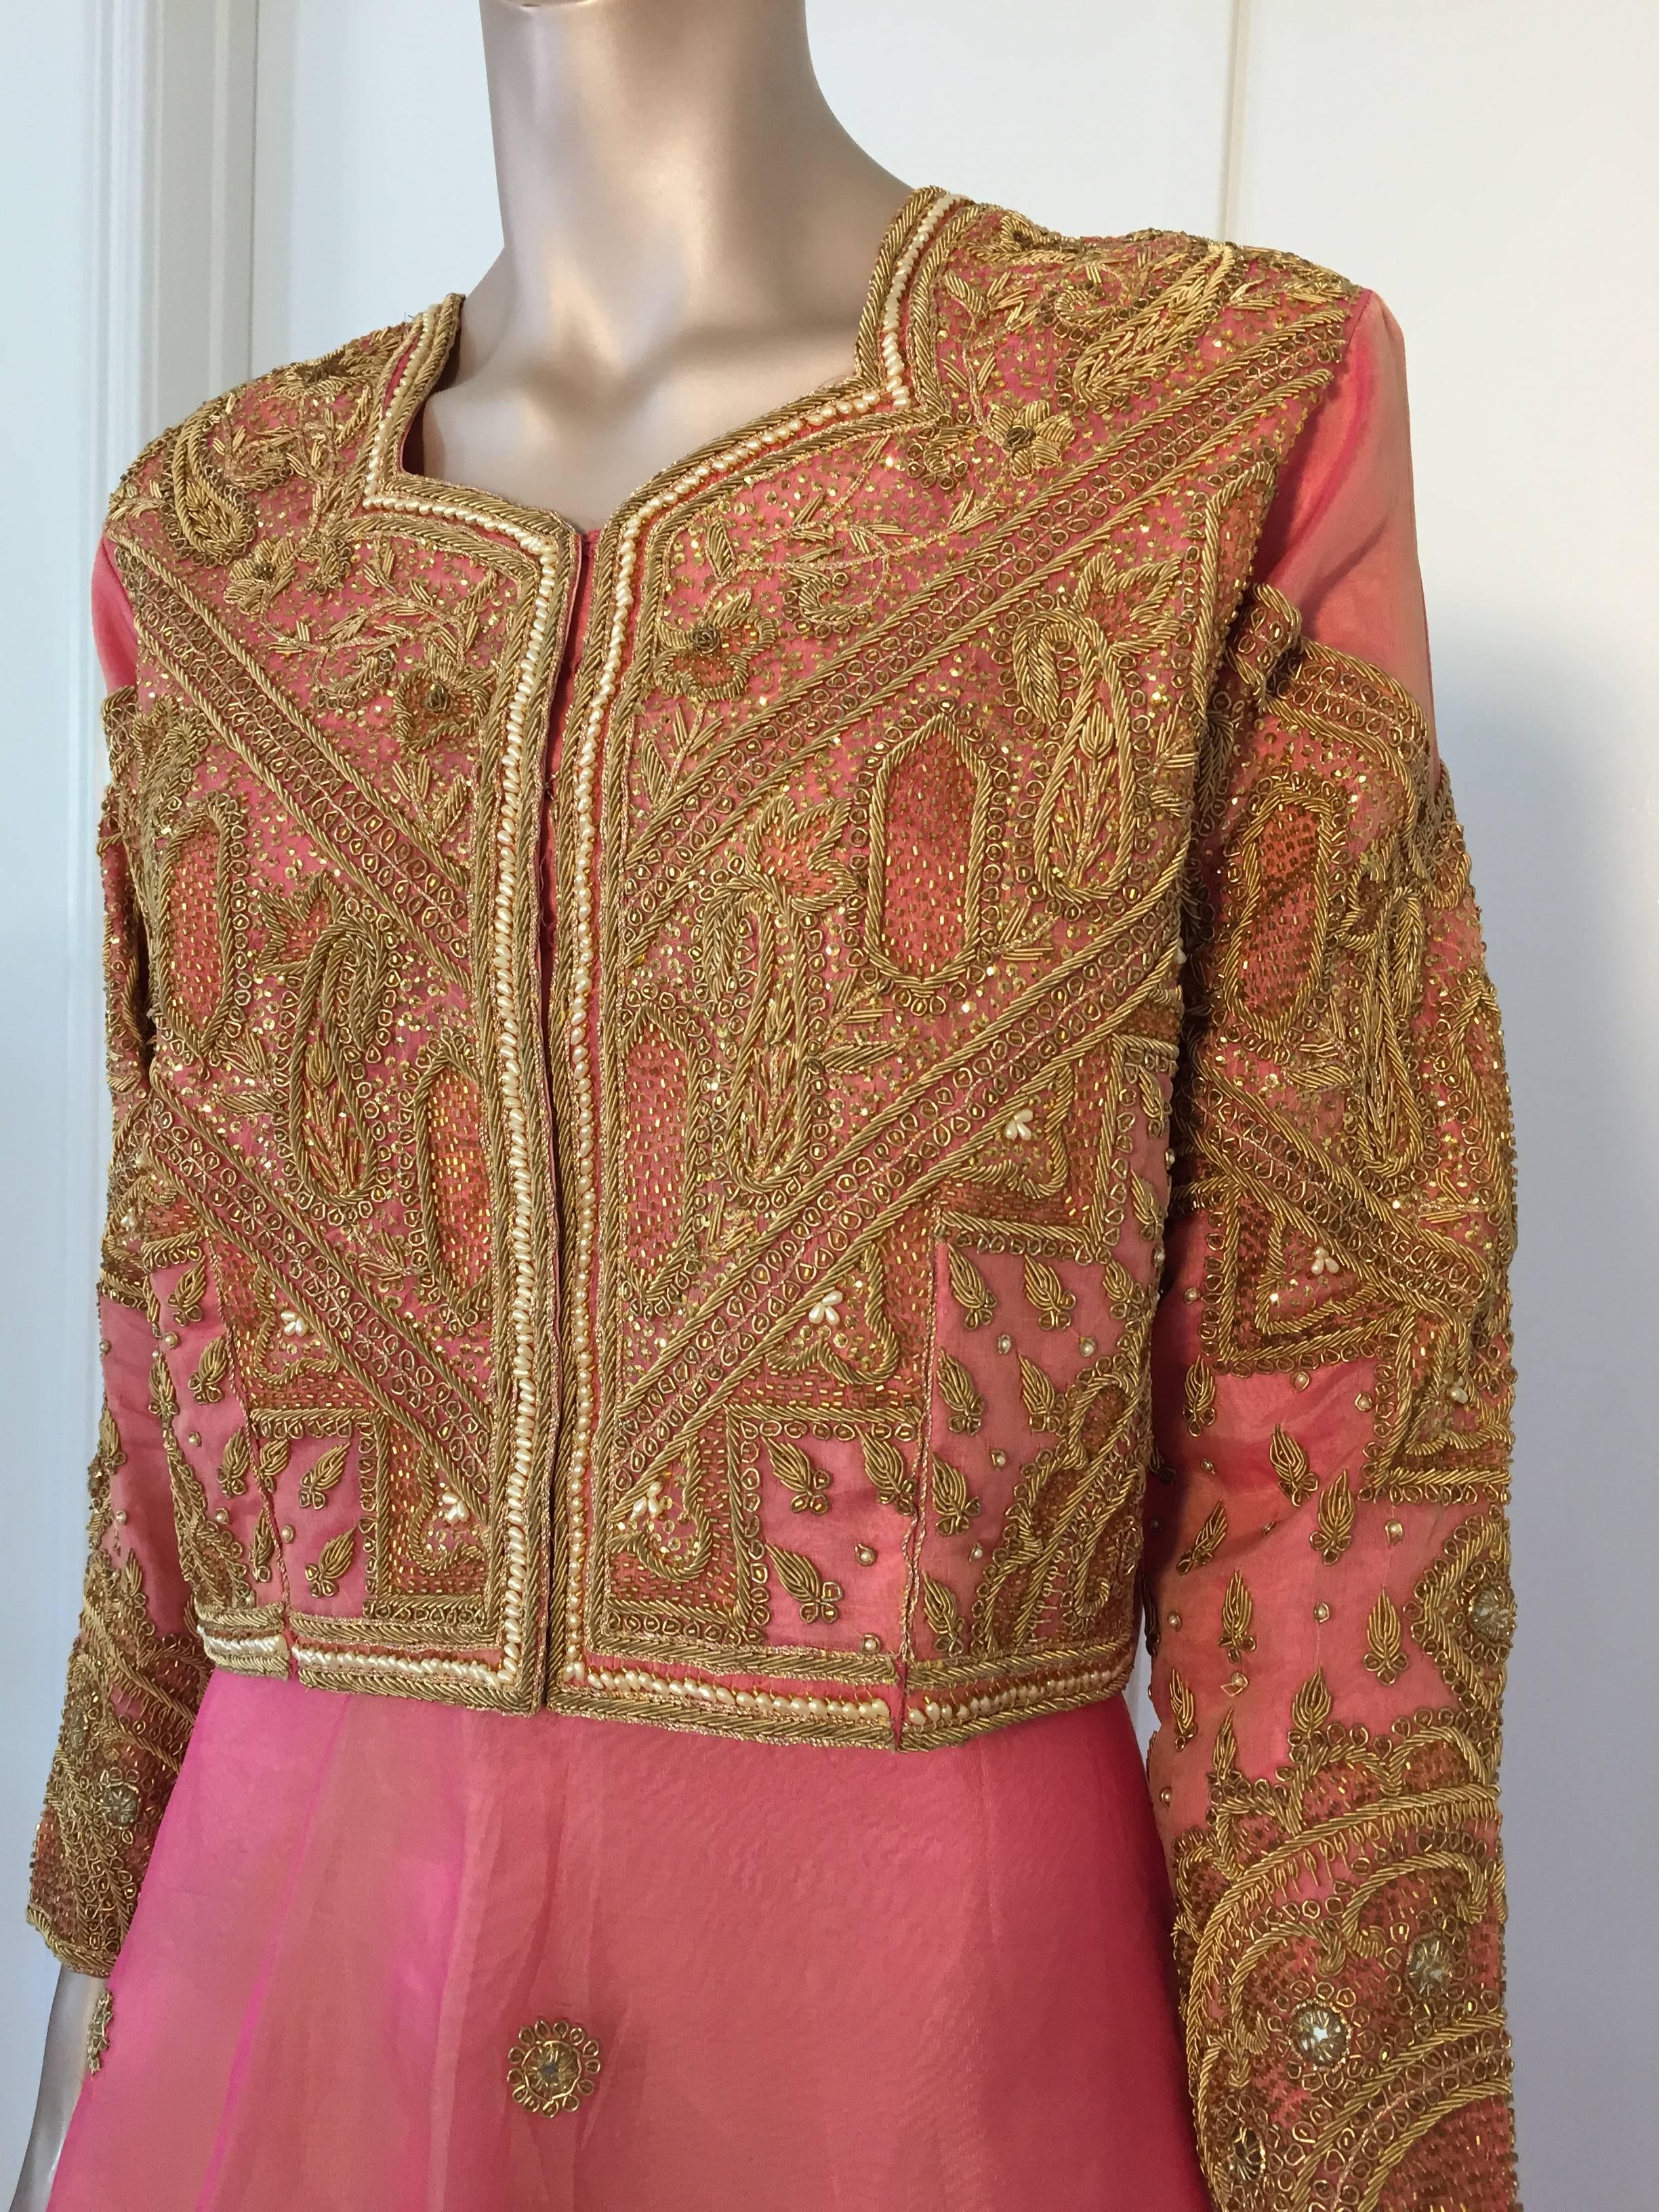 Indien Robe de soirée en soie brodée rose et or 3 pièces Gilet, jupe et châle en vente